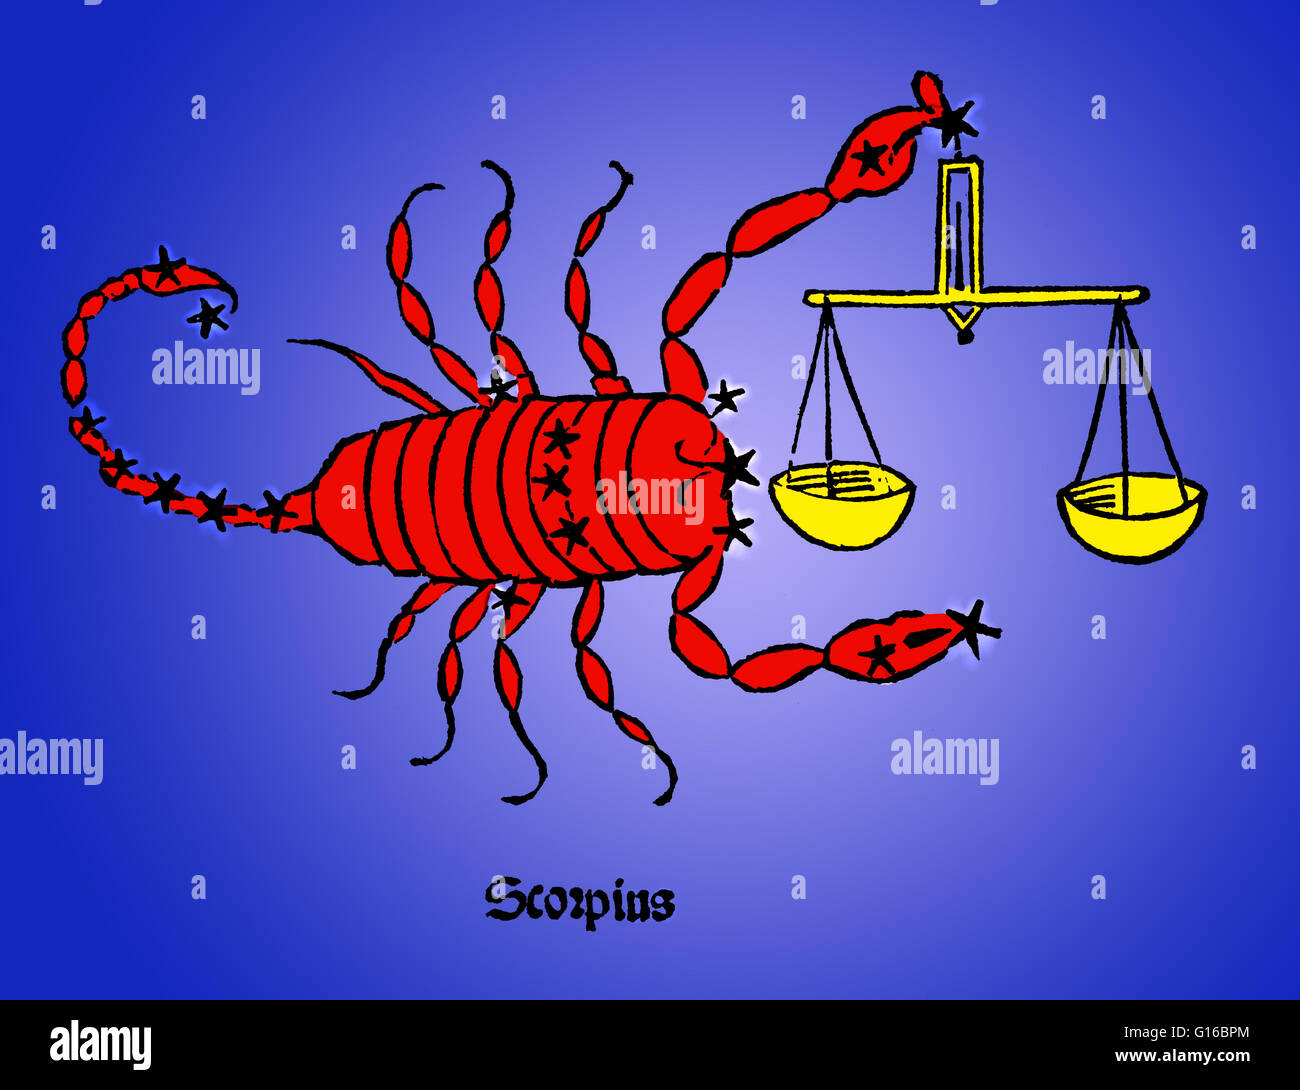 Farbverbesserung von Scorpius (manchmal Skorpion), eines der Sternbilder des Tierkreises. Sein Name ist lateinisch für Scorpion. Es ist eines der 48 Sternbilder von der 2. Jahrhundert Astronom Ptolemäus beschrieben, und bleibt eines der 88 modernen Sternbilder Stockfoto